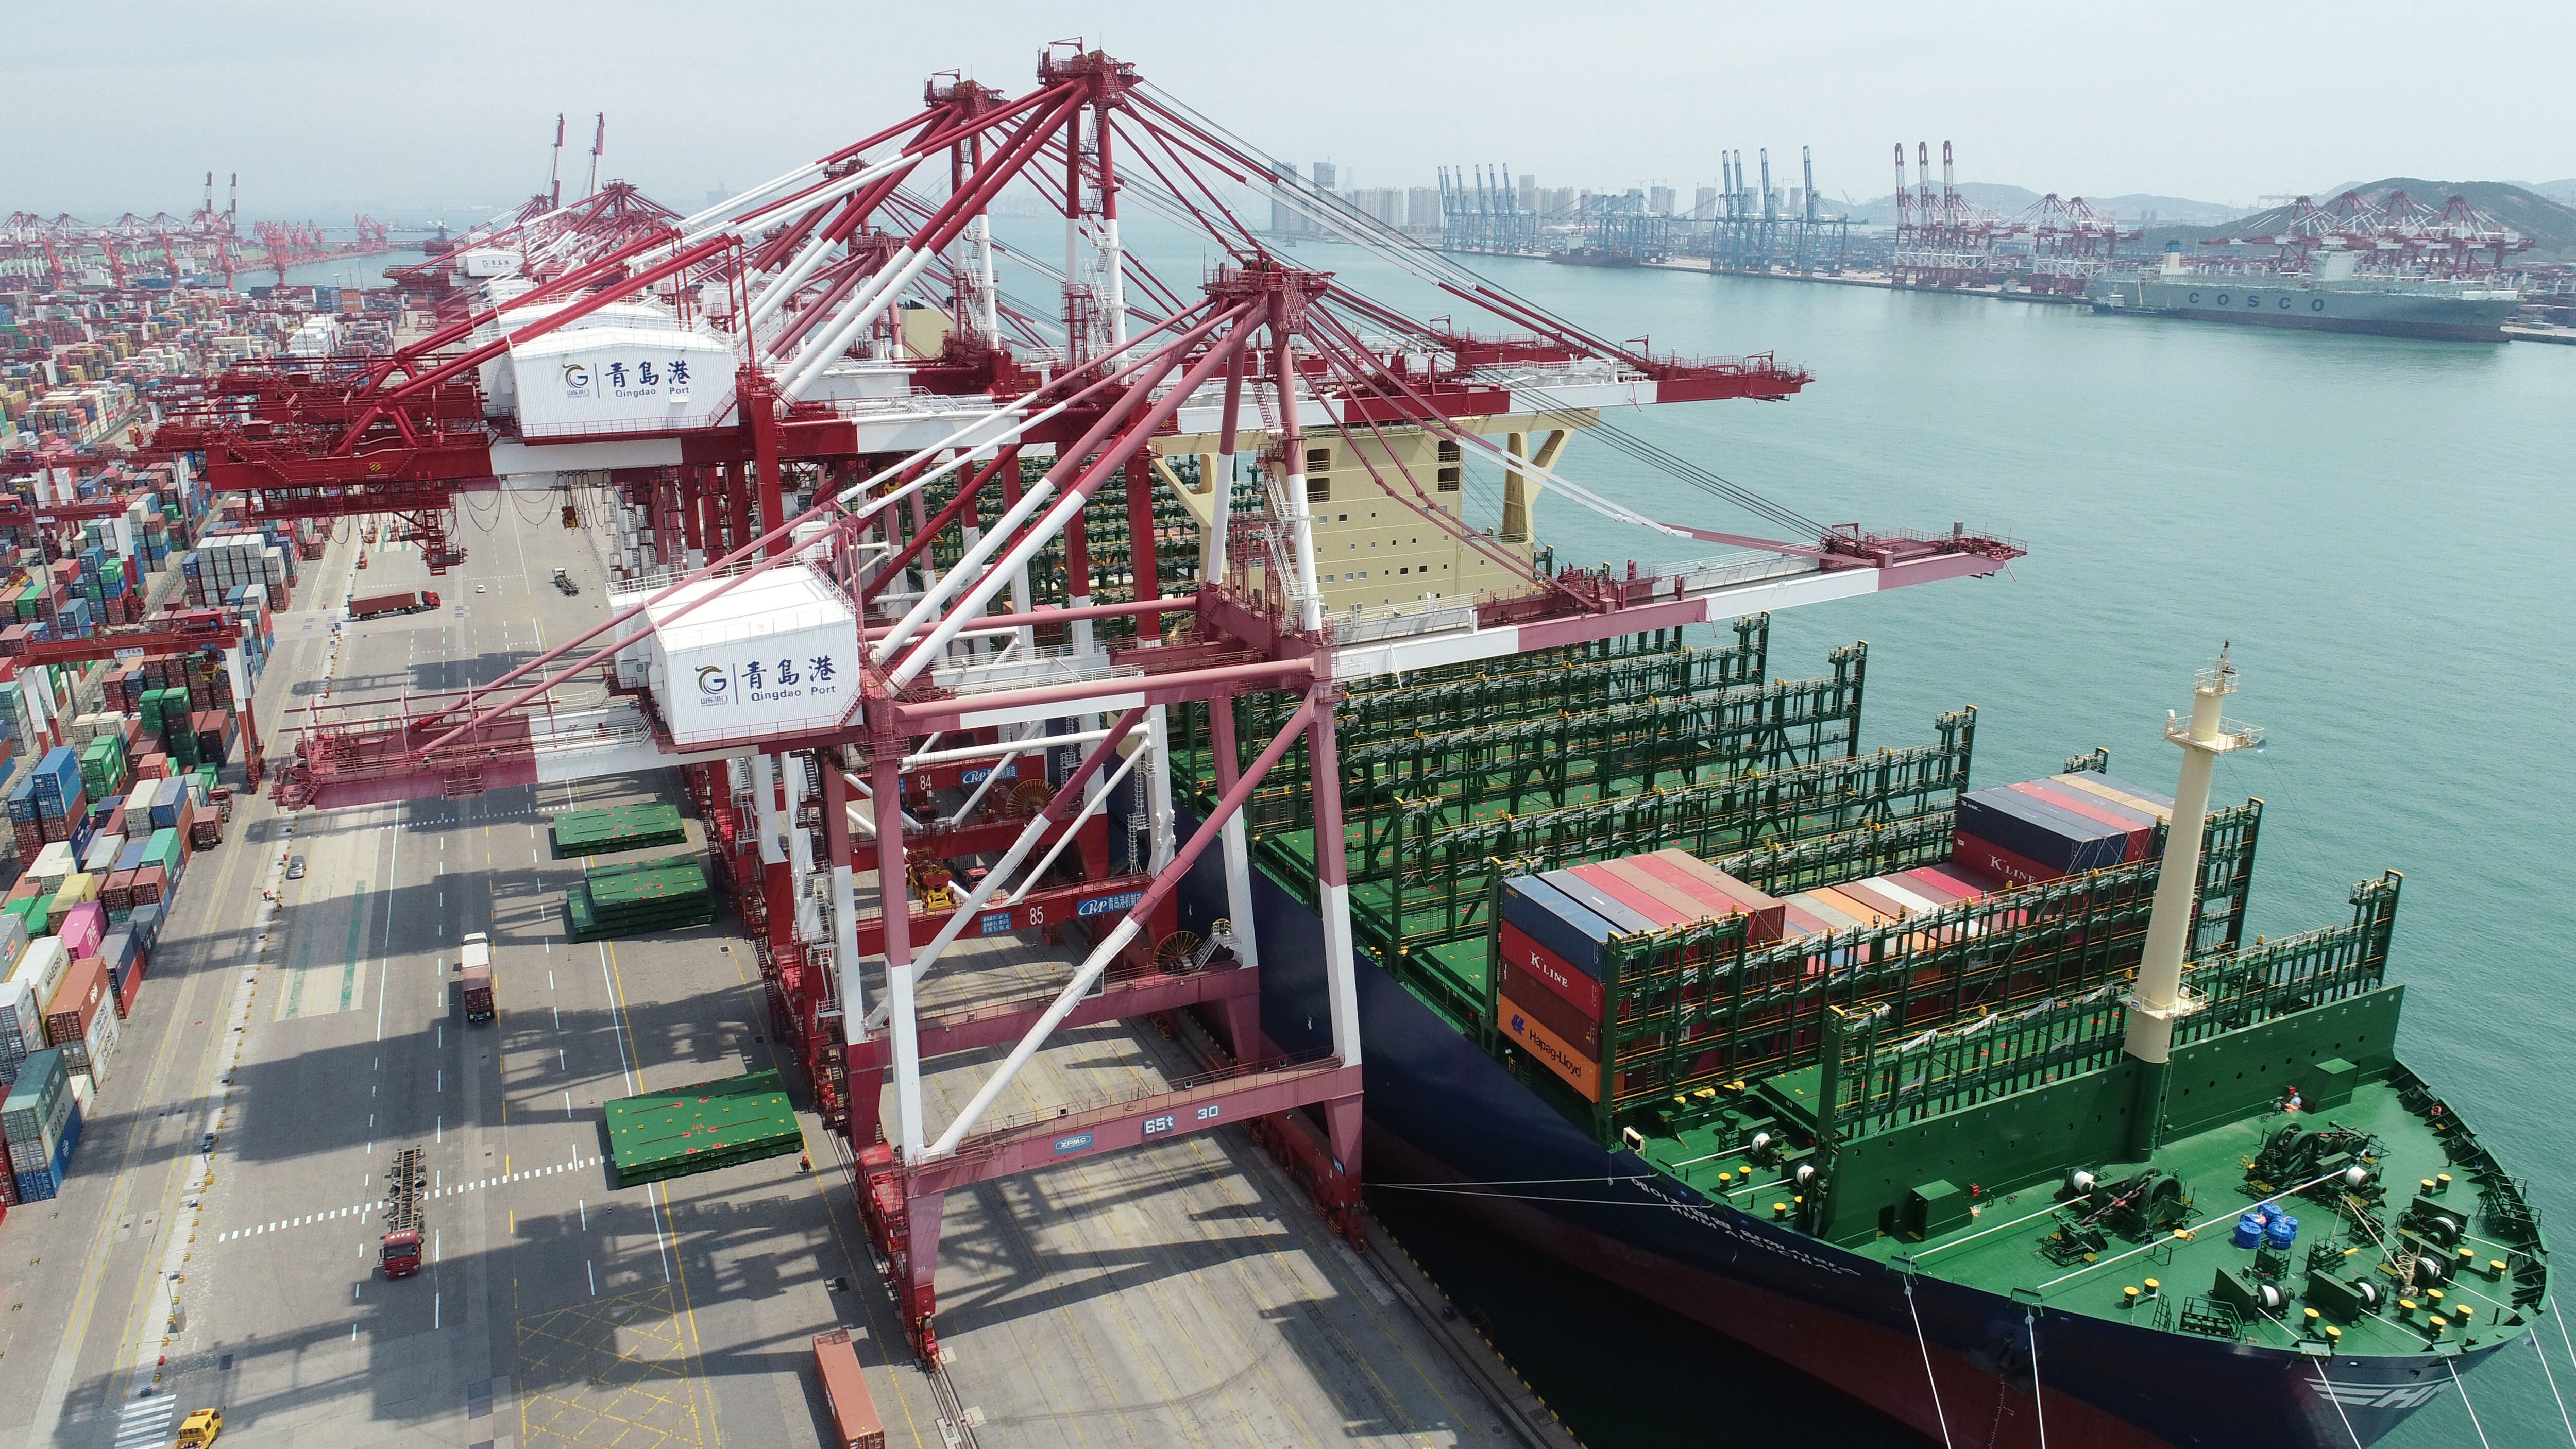 El buque portacontenedores más grande del mundo "HMM Algeciras" de la naviera surcoreana HMM se está cargando en el puerto de Qingdao en China. Foto: Zhangjingang/SIPA Asia vía ZUMA Wire/dpa
